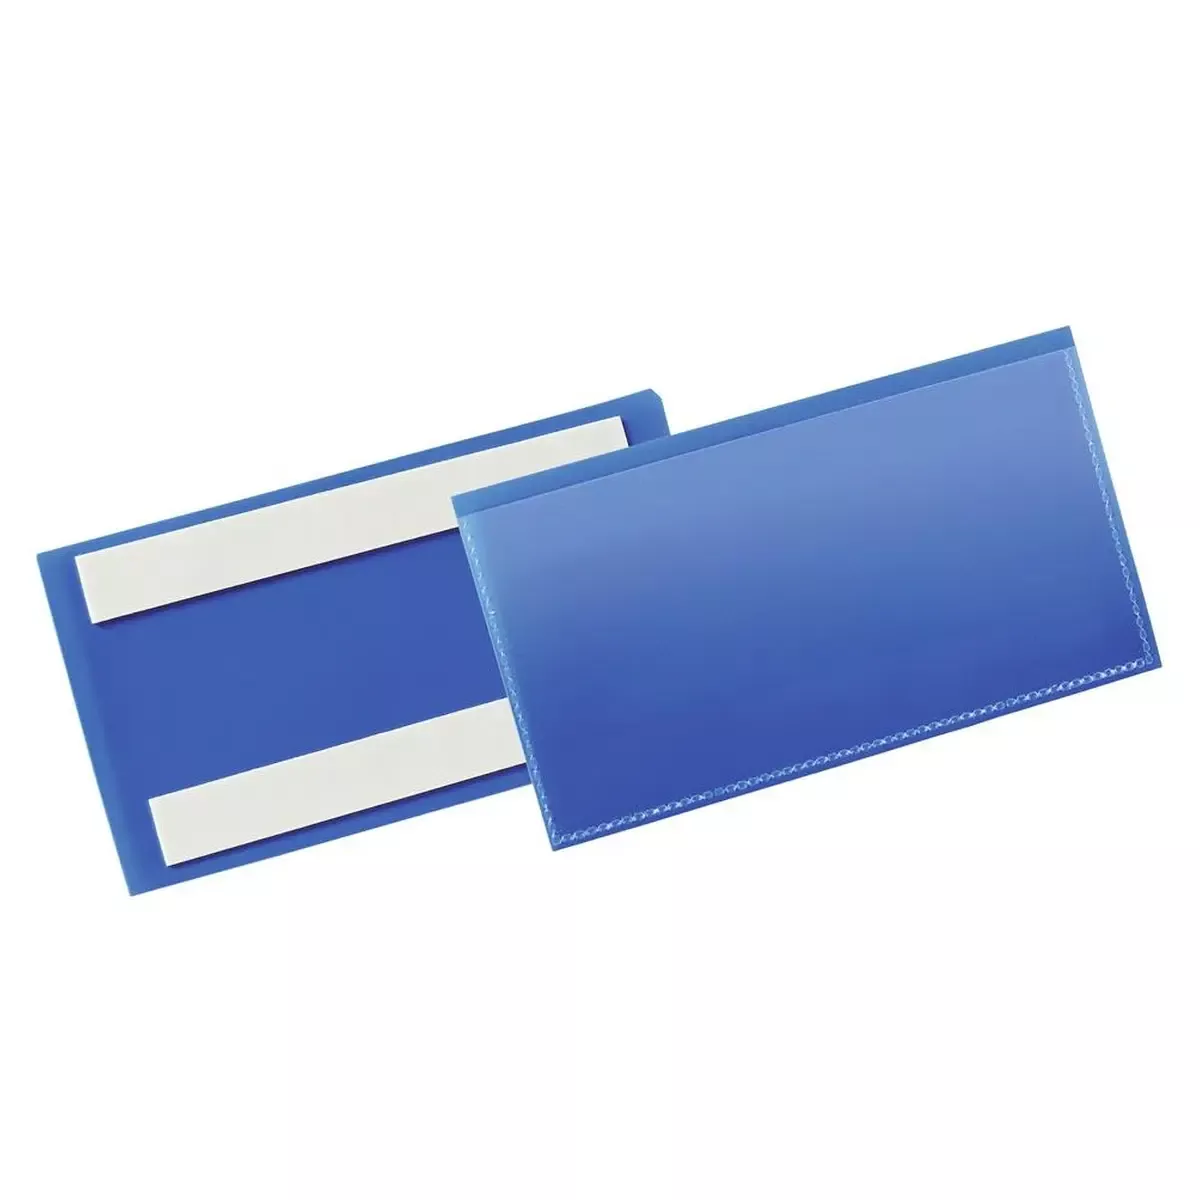 Regale Selbstklebende Kennzeichnungstasche, BxH innen 150x67 mm, Farbe dunkelblau, VE 50 Stück für Lager